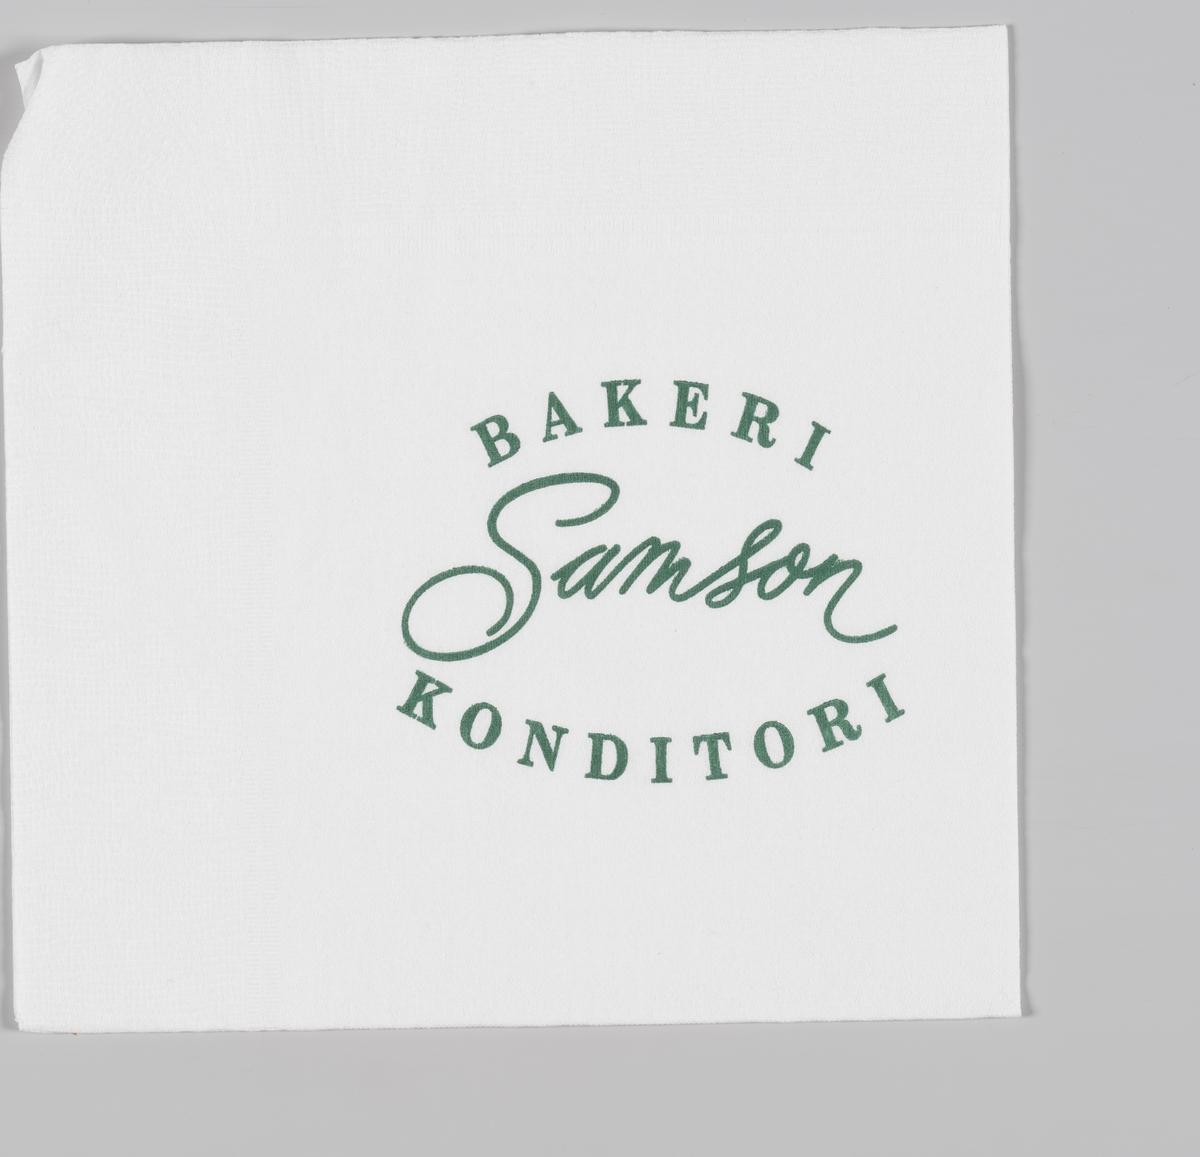 En reklametekst for Baker Samson

Wilhelm Bismark Samson startet sitt første bakeri i 1894 på Egertorget i Kristiania.

Reklame for Samson på serviettene MIA.00007-004-0001 til MIA.00007-004-0006